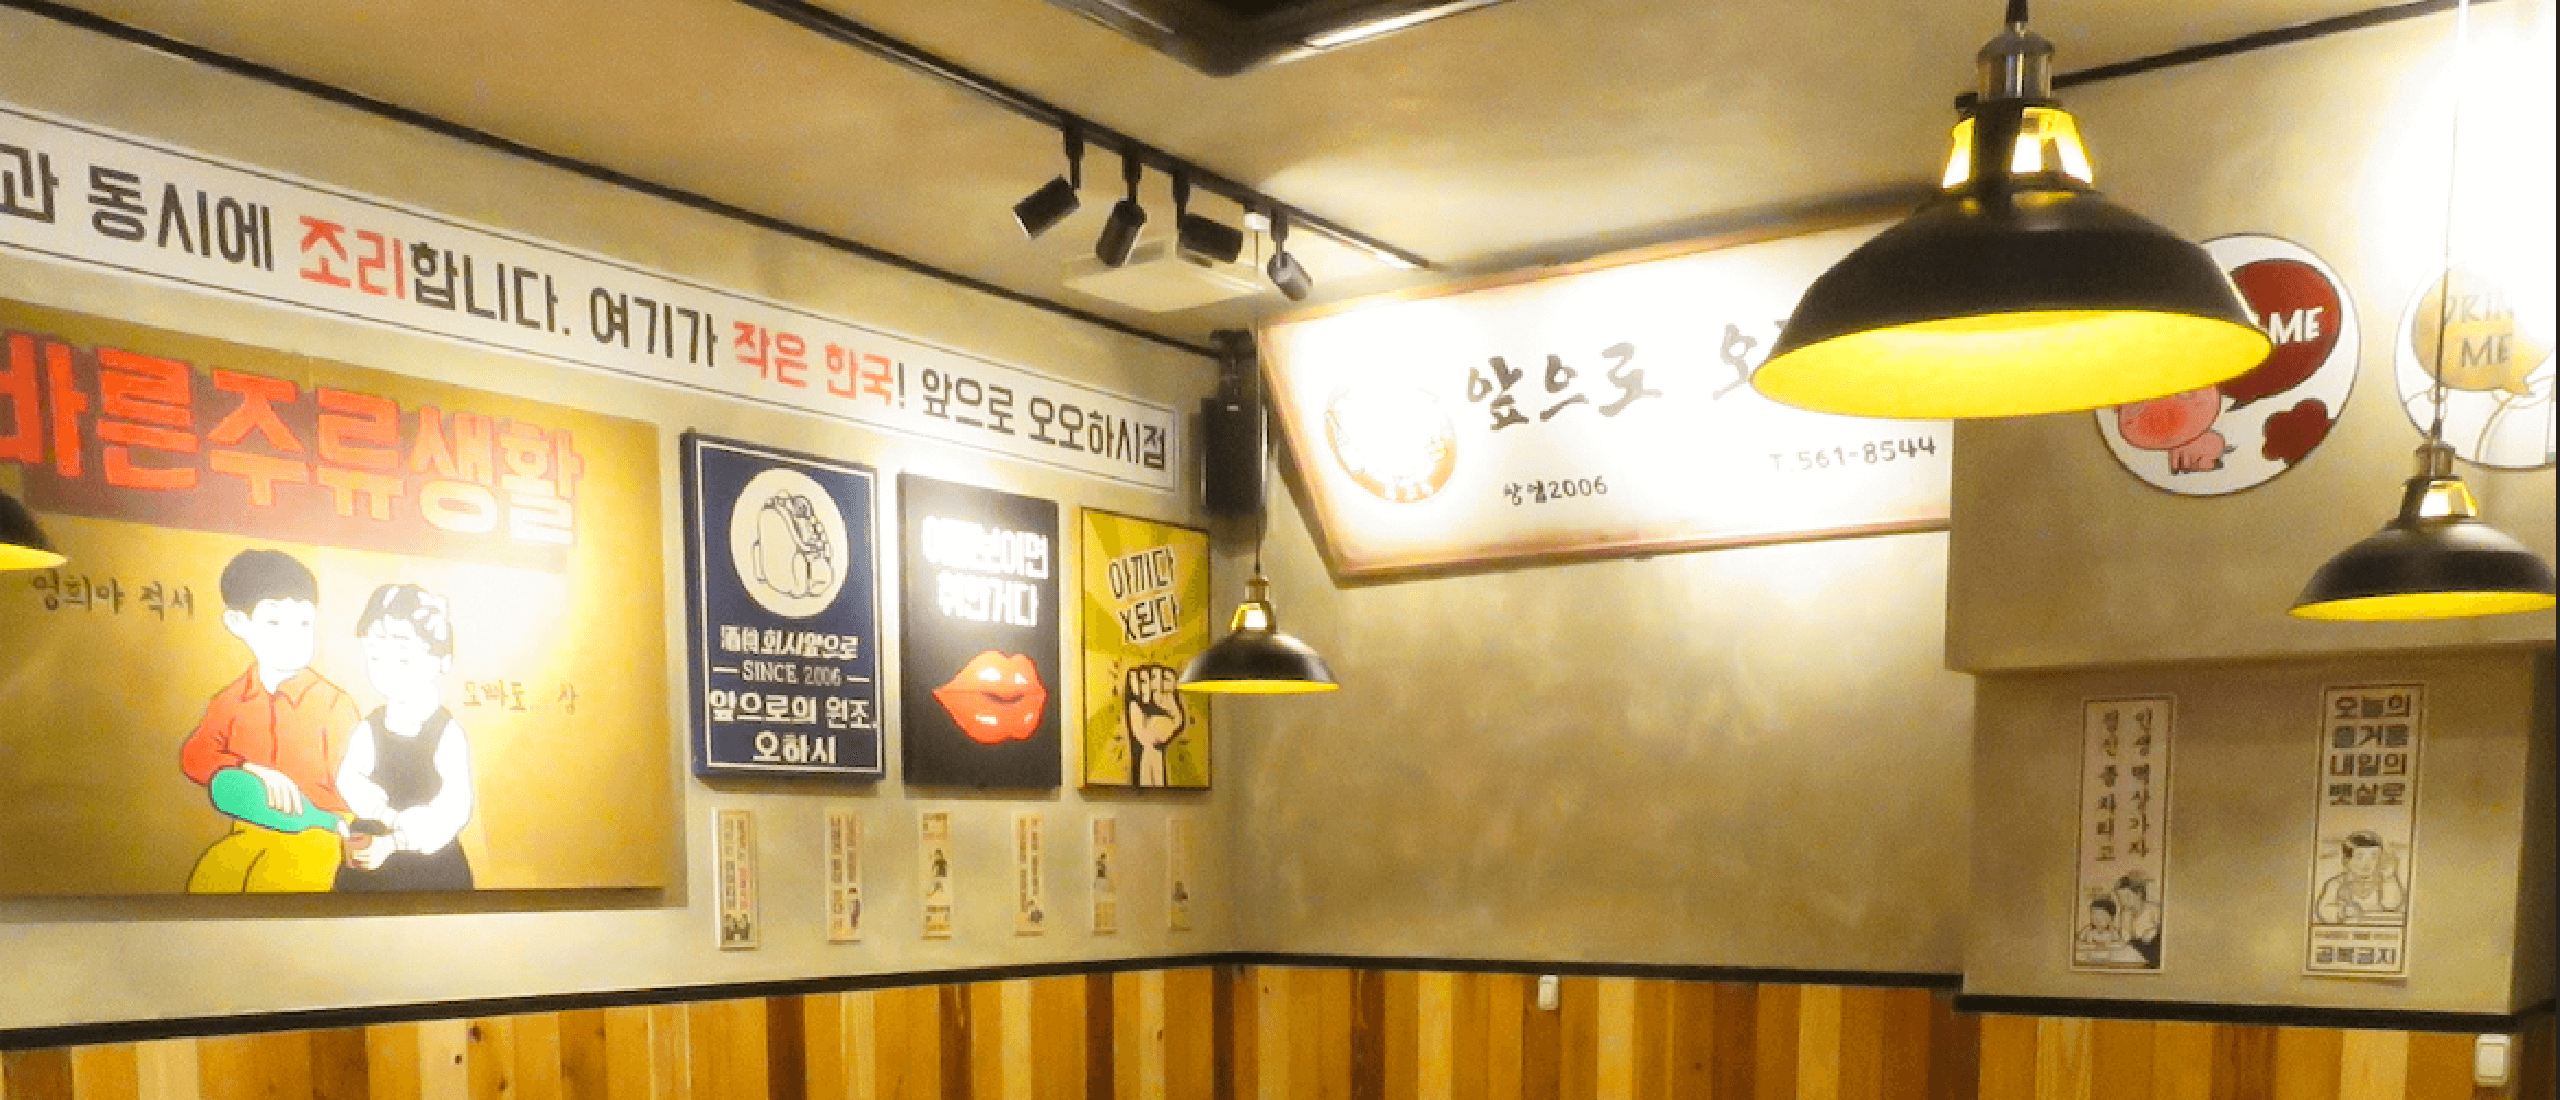 壁に掲載された韓国カルチャー